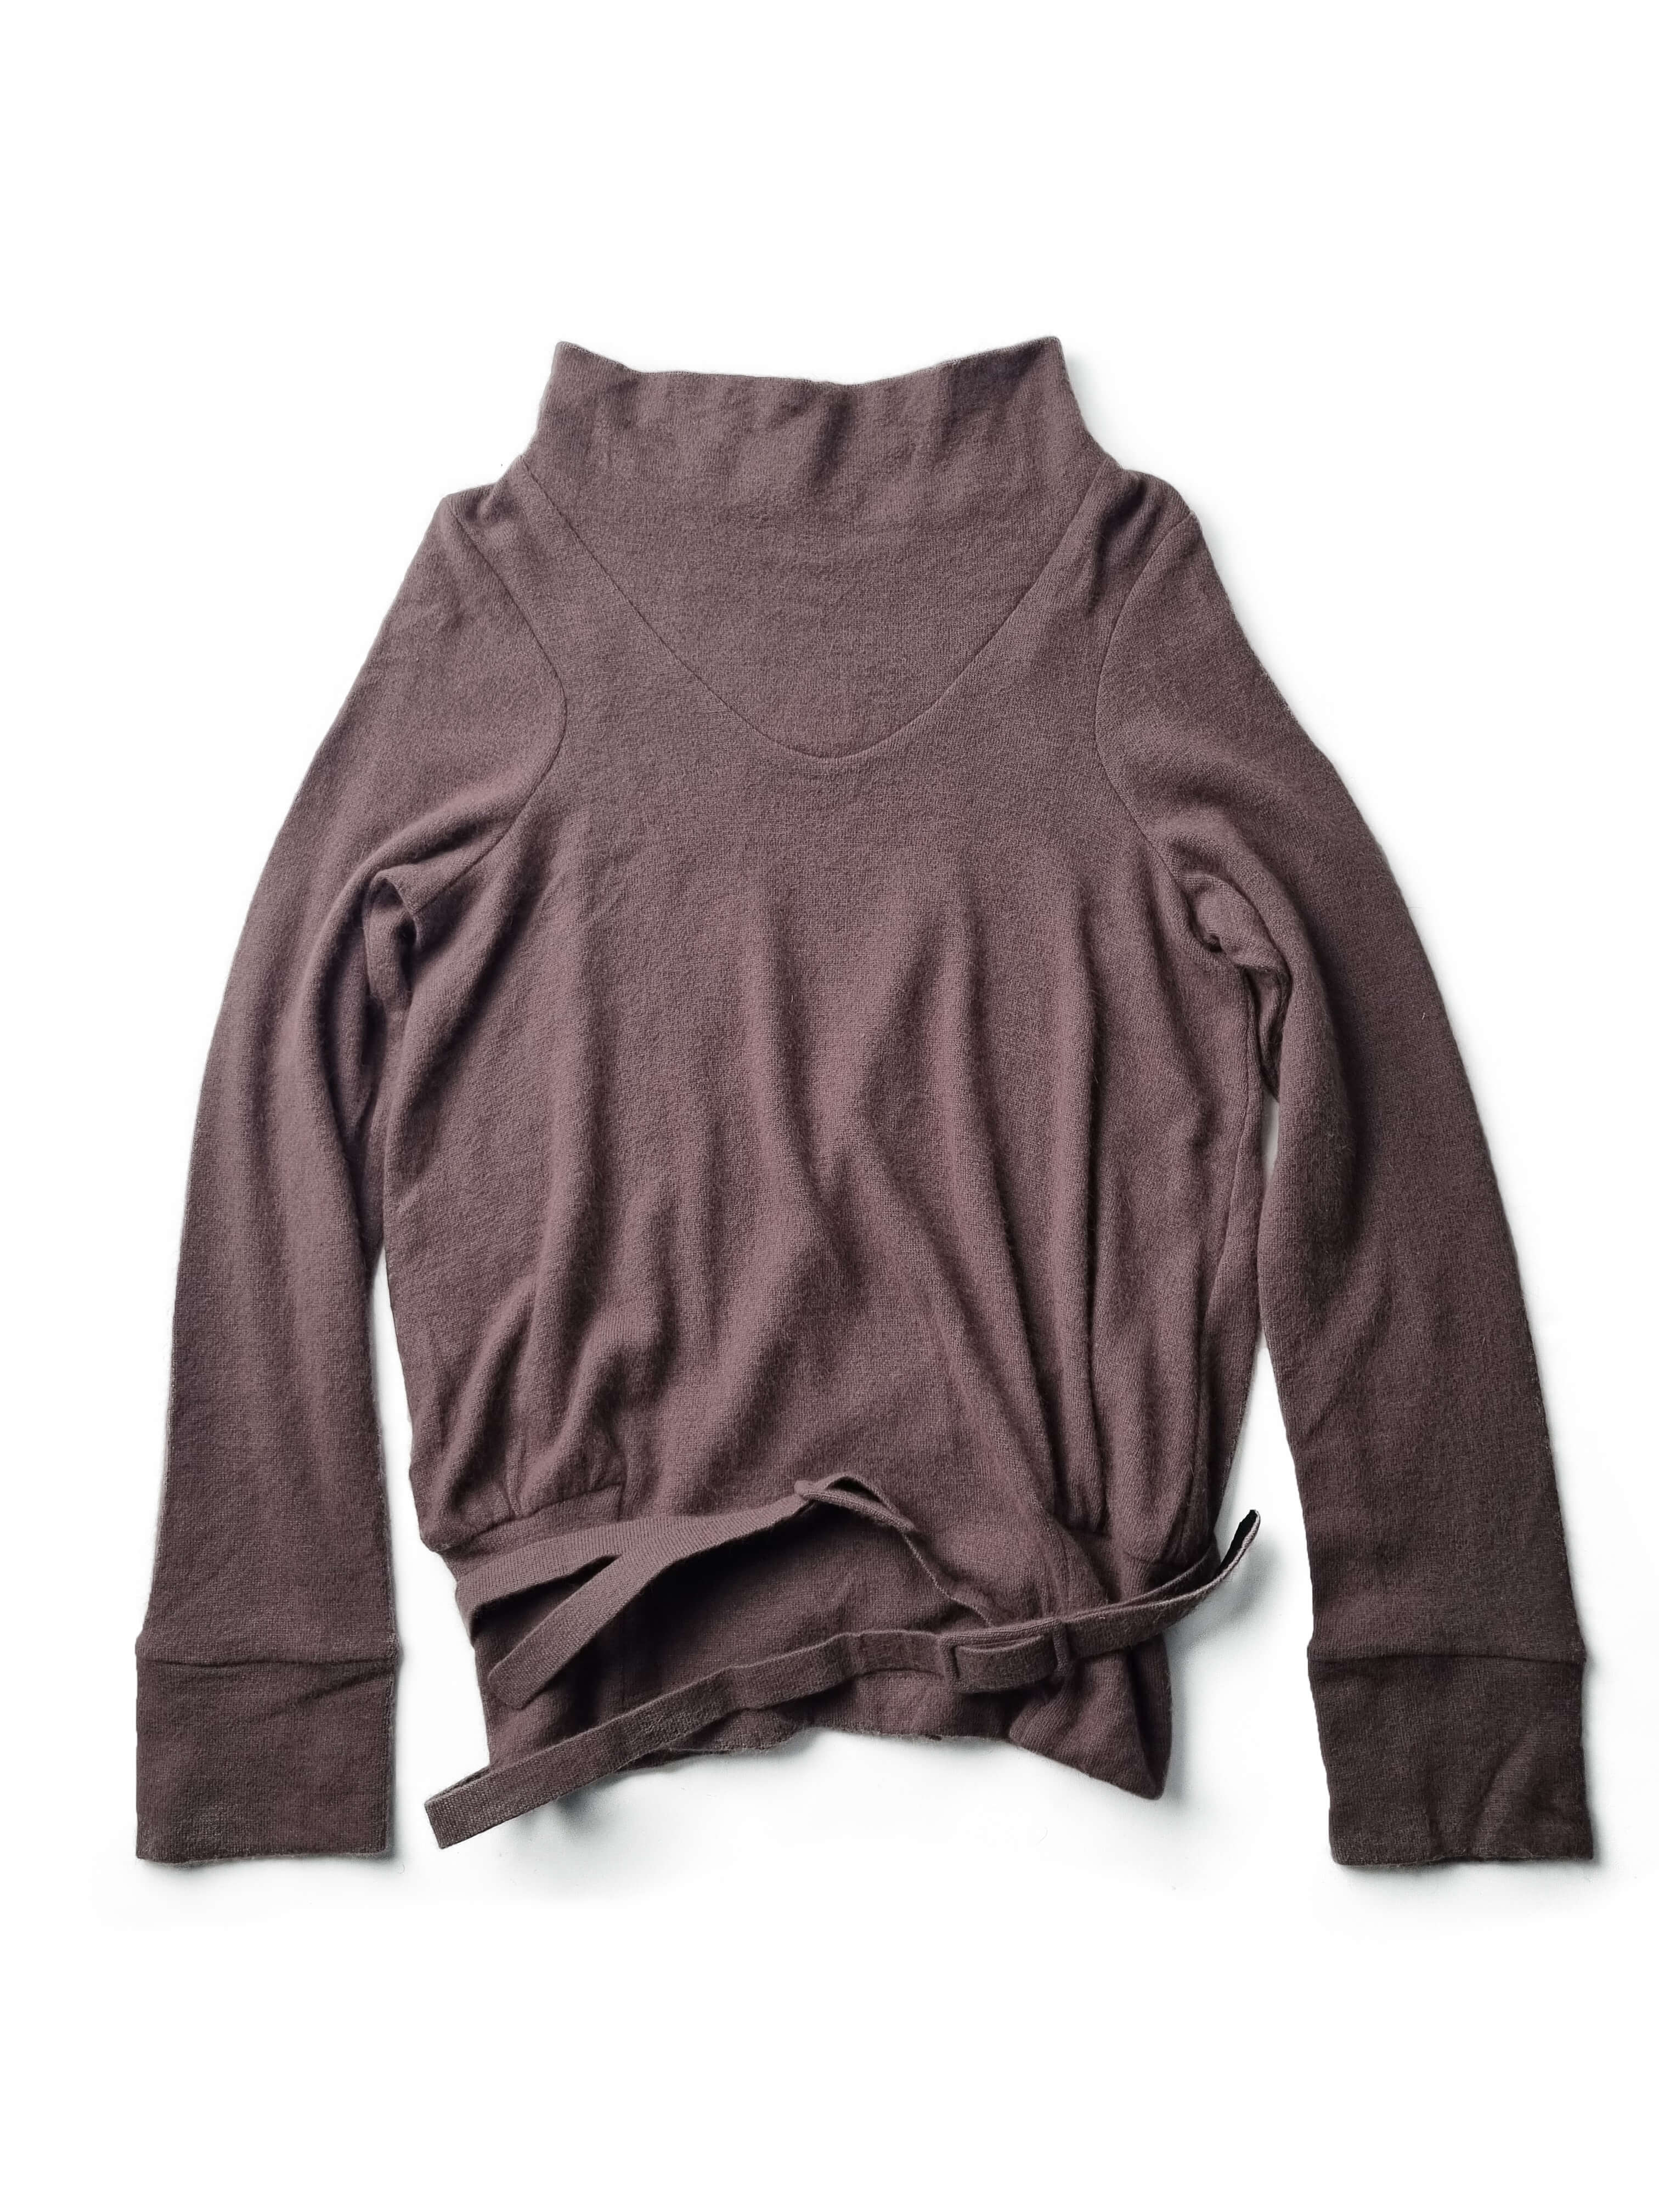 VERONIQUE BRANQUINHO angora blend sweater